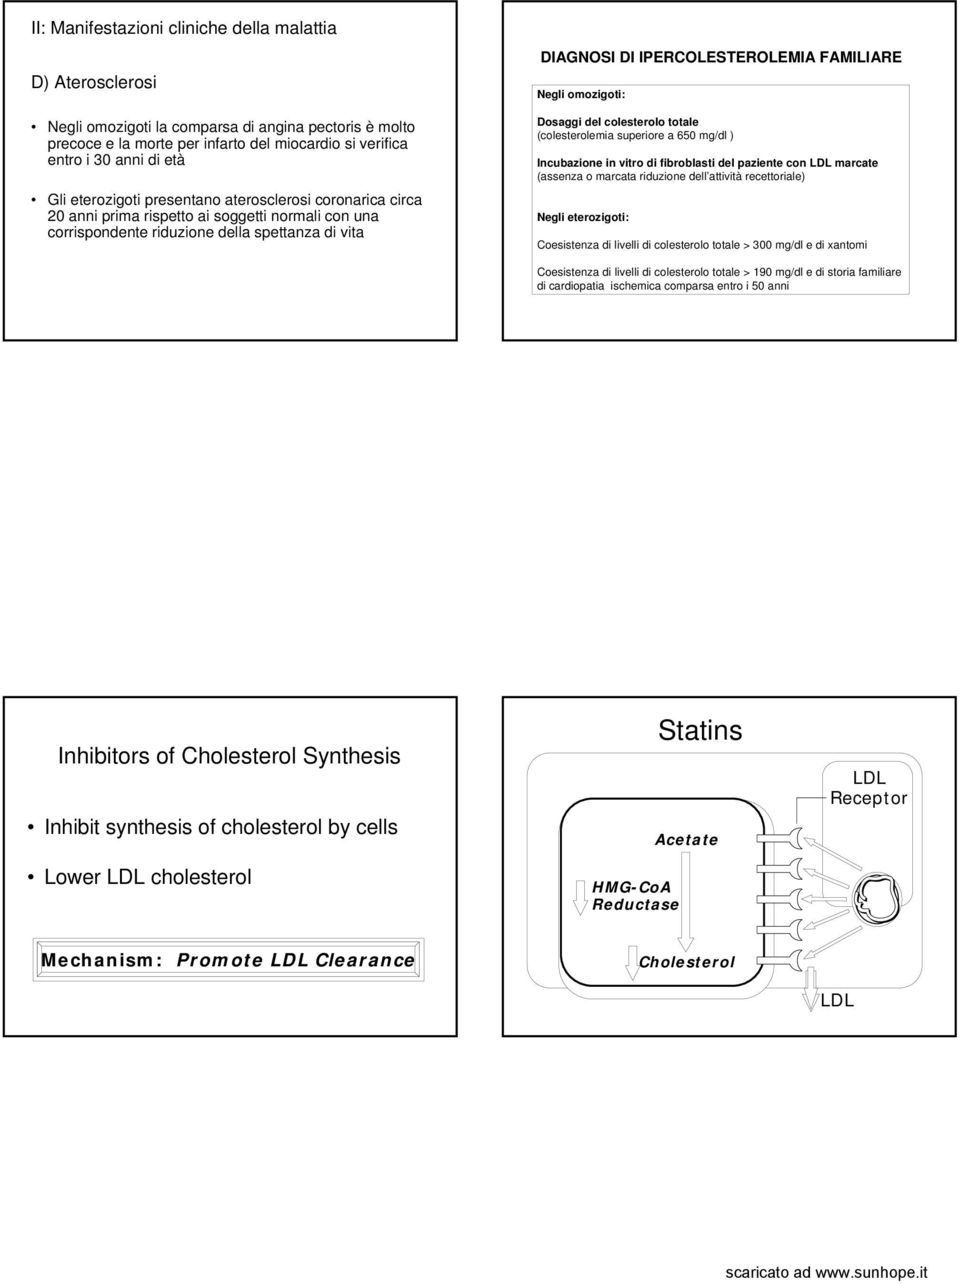 Negli omozigoti: Dosaggi del colesterolo totale (colesterolemia superiore a 650 mg/dl ) Incubazione in vitro di fibroblasti del paziente con marcate (assenza o marcata riduzione dell attività